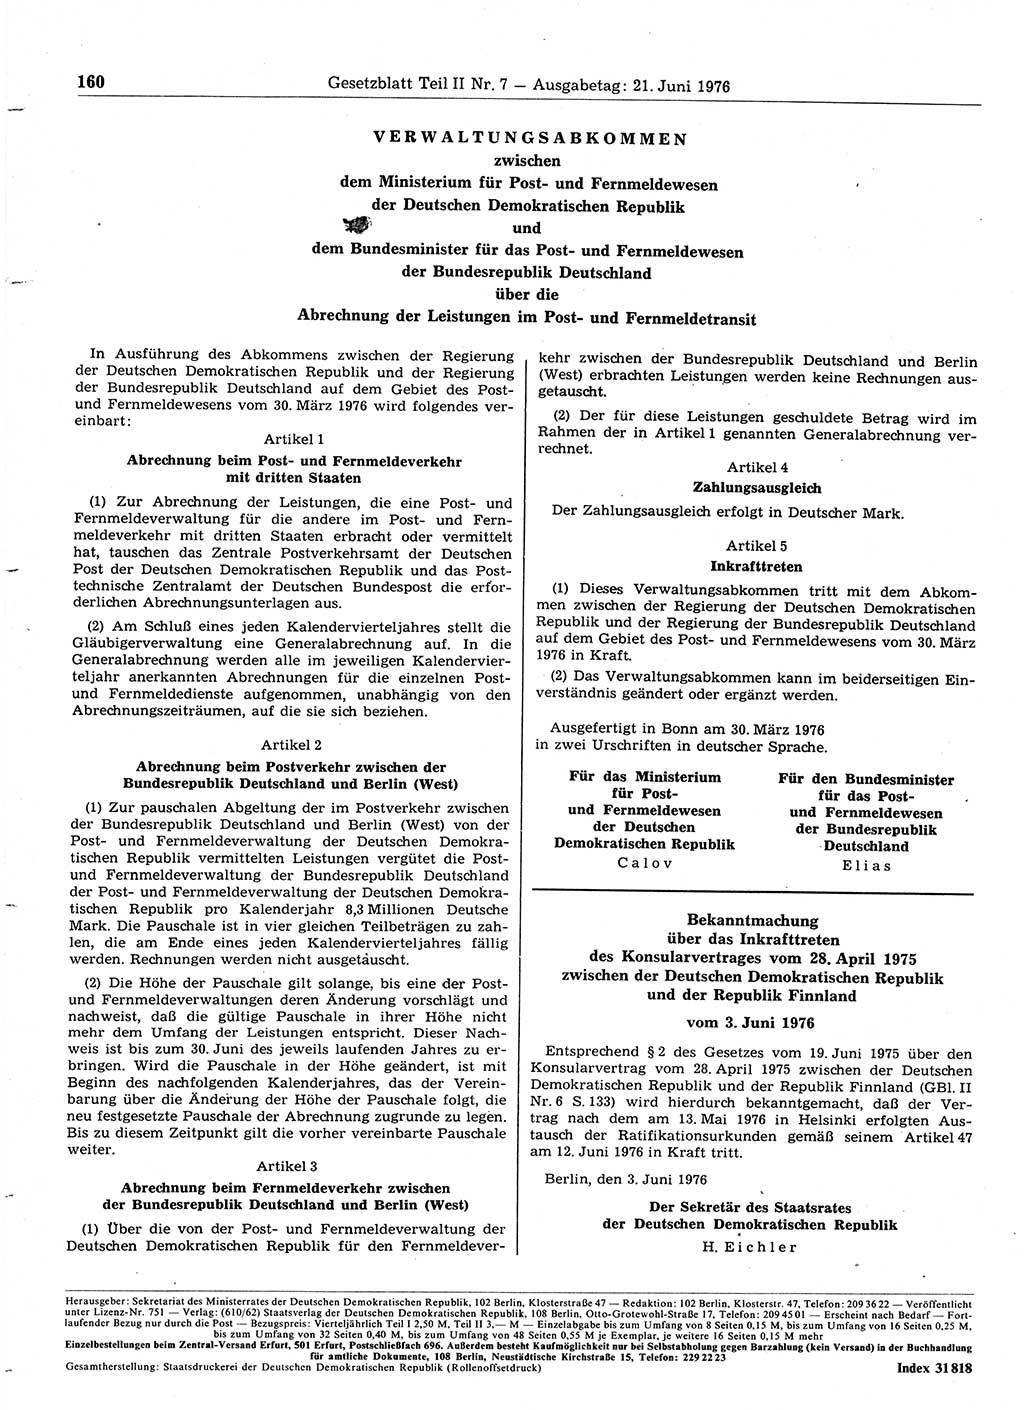 Gesetzblatt (GBl.) der Deutschen Demokratischen Republik (DDR) Teil ⅠⅠ 1976, Seite 160 (GBl. DDR ⅠⅠ 1976, S. 160)